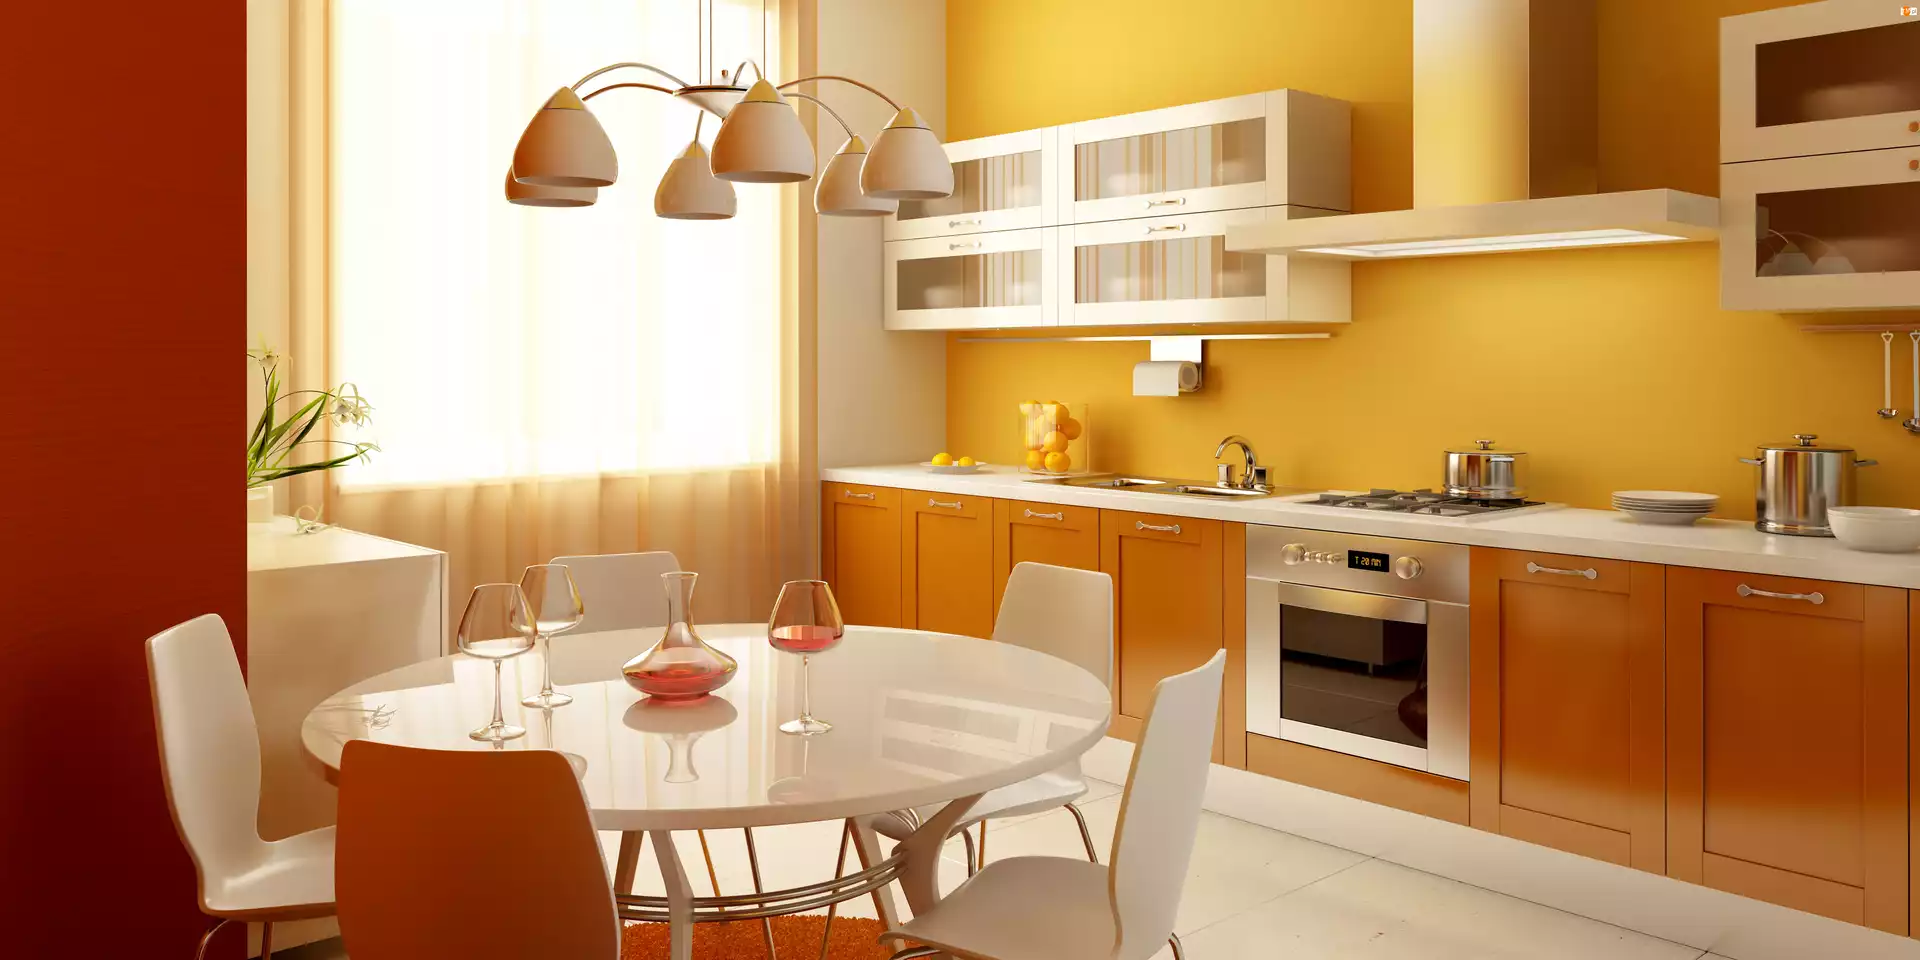 Żółta, Krzesła, Kuchnia, Stół